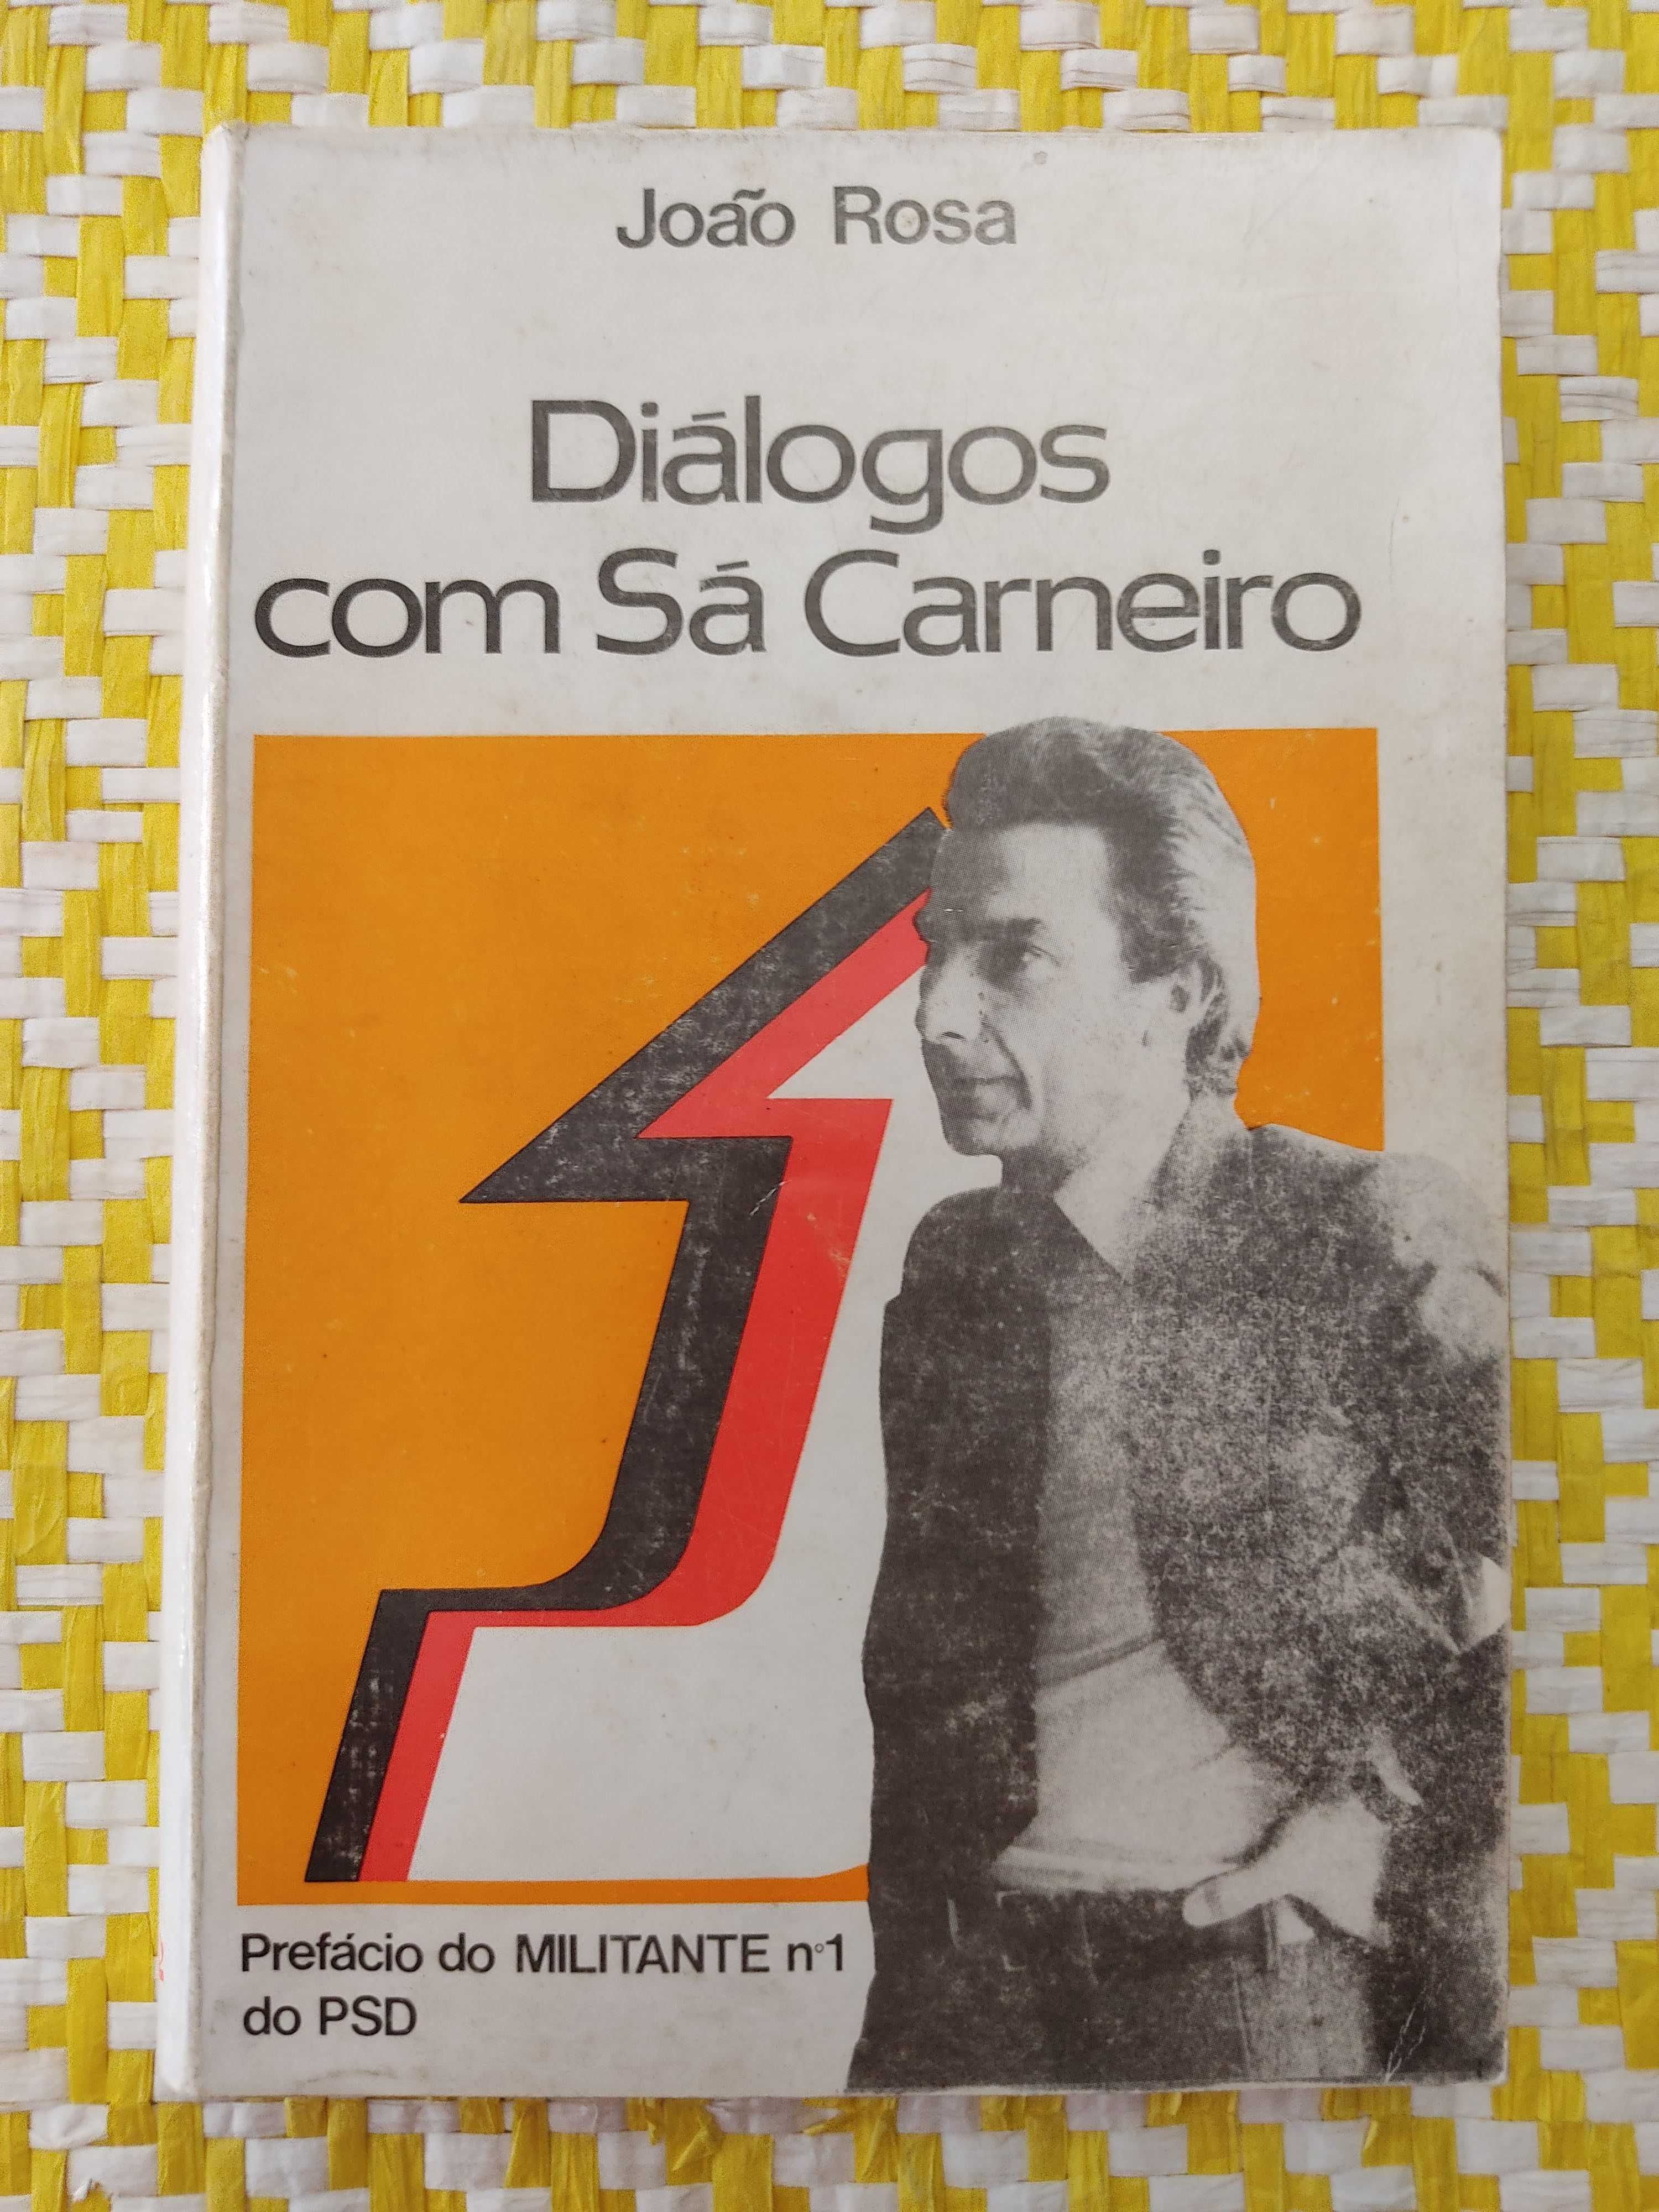 DIÁLOGOS COM SÁ CARNEIRO 
 João Rosa
Prefácio de Francisco Sá Carneiro